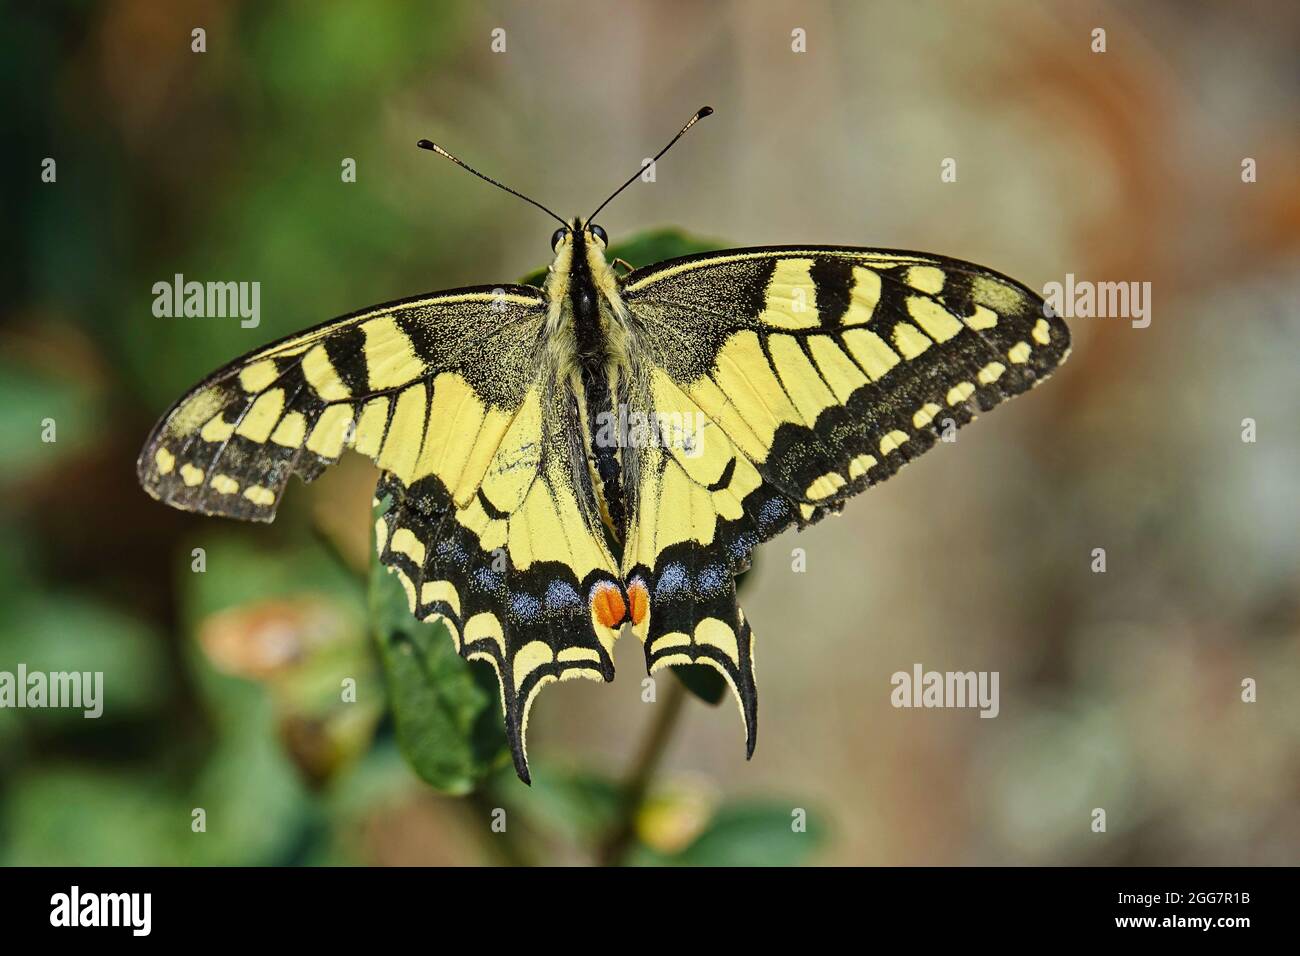 Ancien monde Swallowtail butterfly - Papilio machaon, beau papillon emblématique de couleur de prés et prairies européennes. Banque D'Images